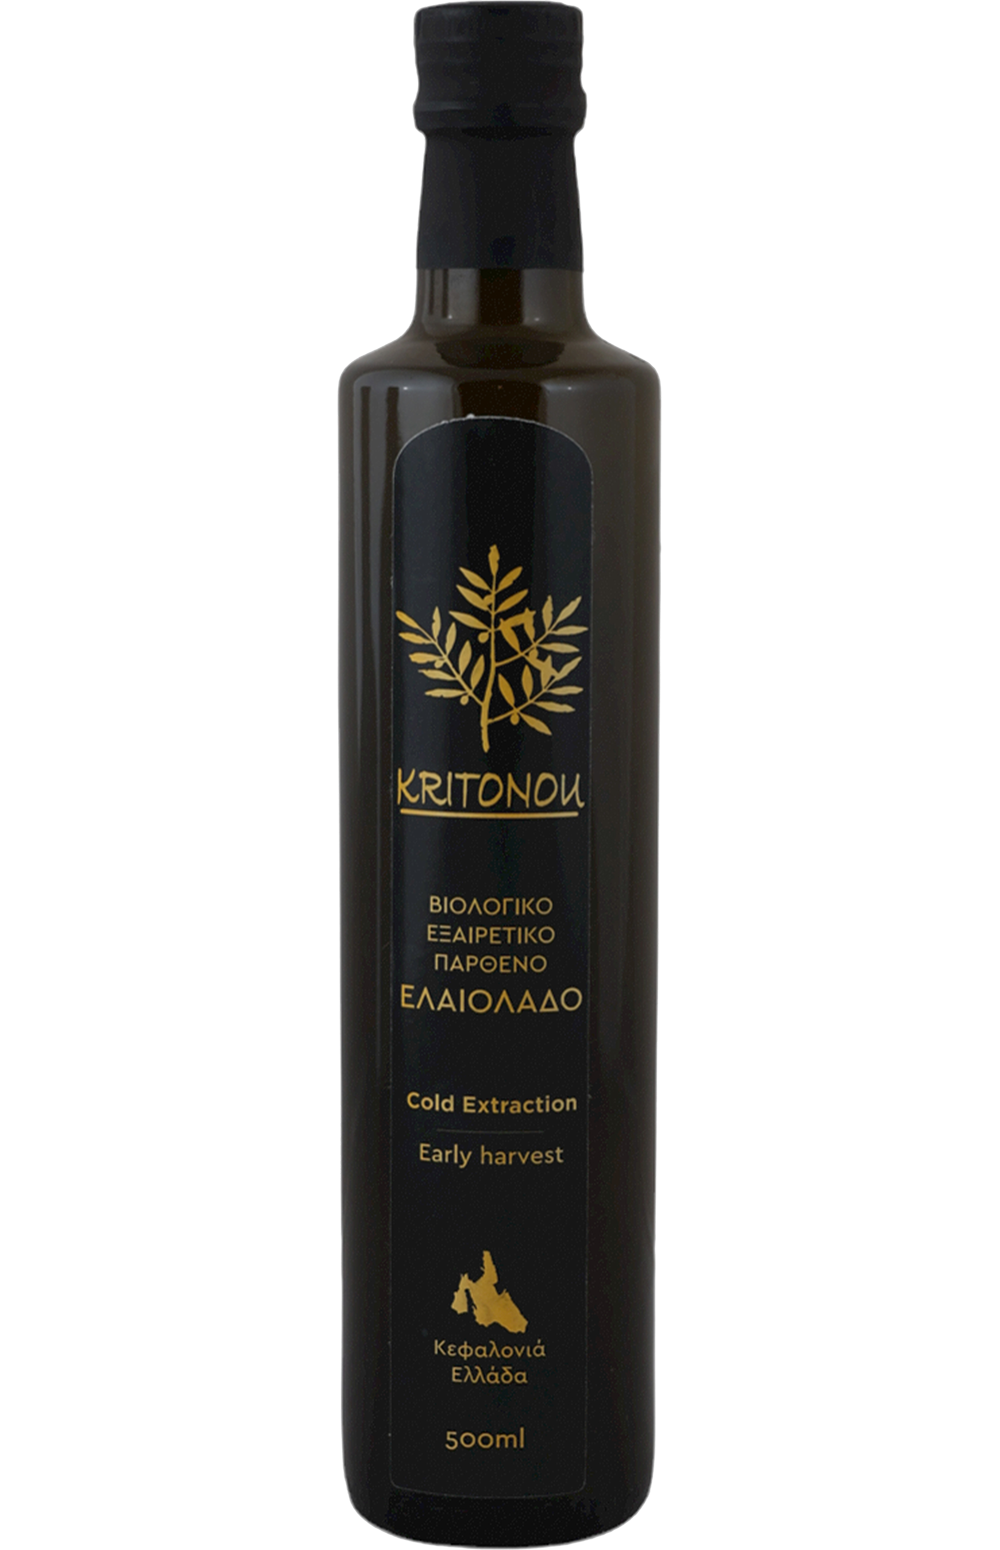 Kritonou Extra Virgin Olive Oil